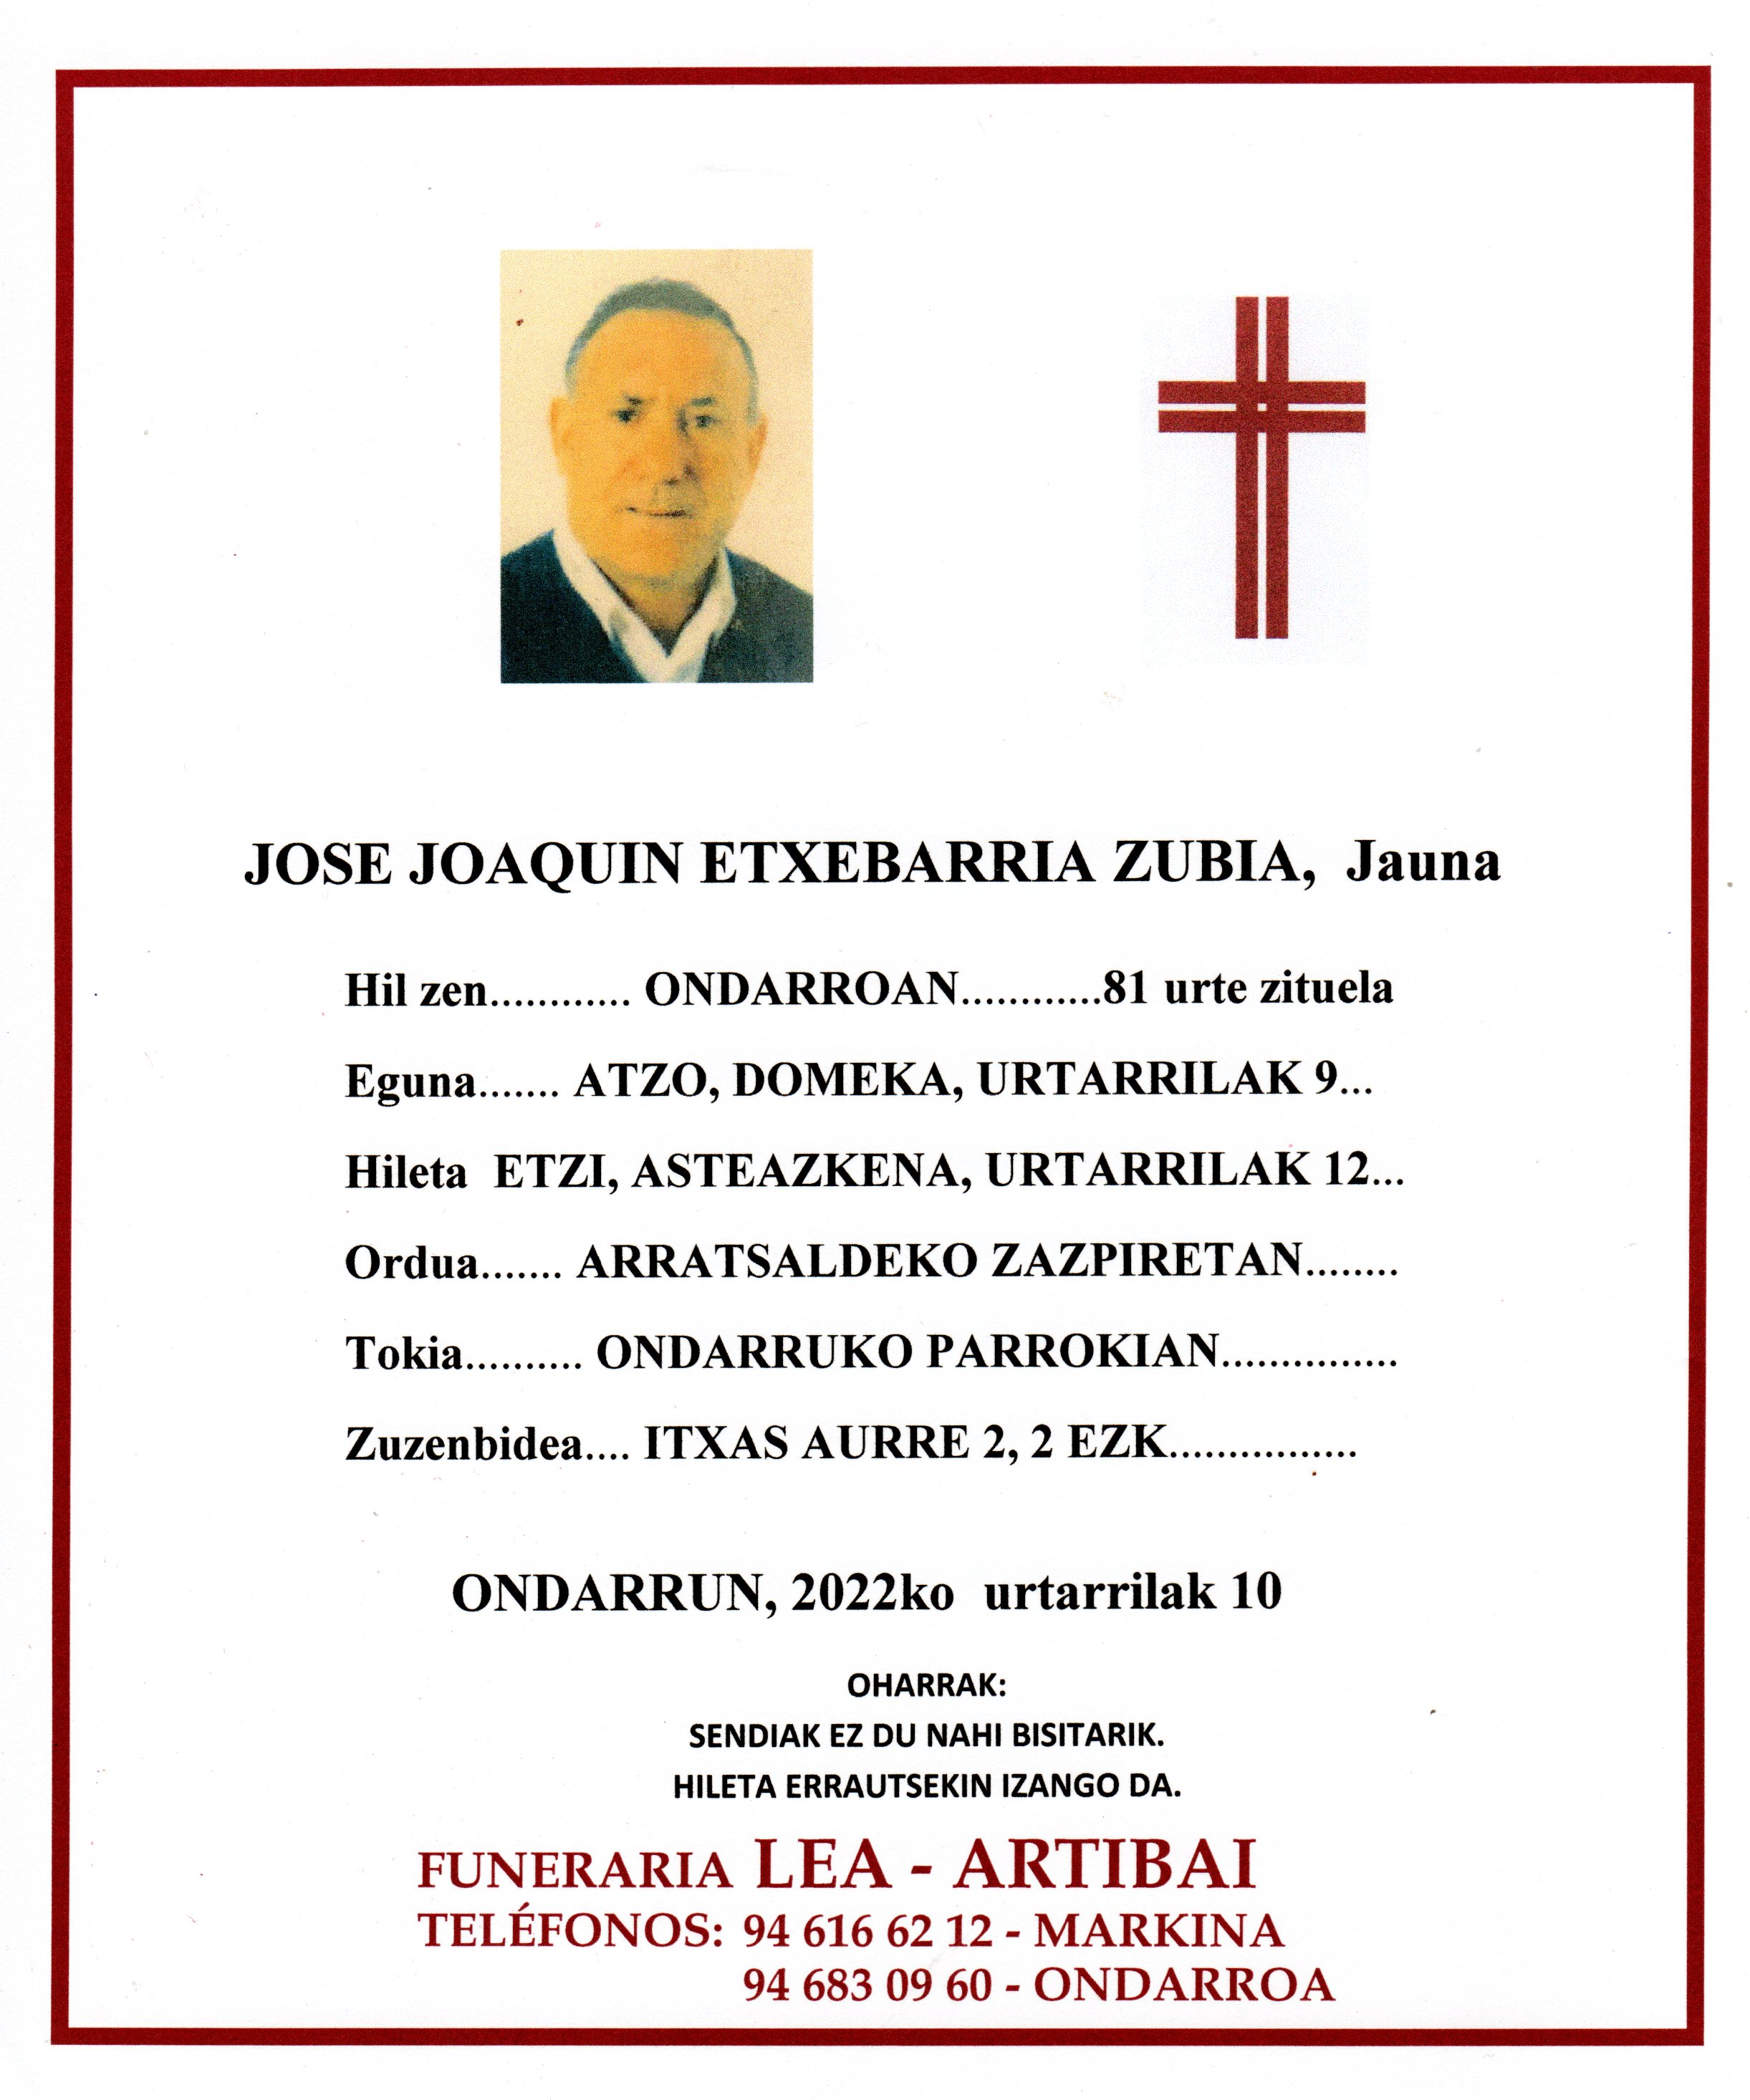 Jose Joaquin Etxebarria Zubia